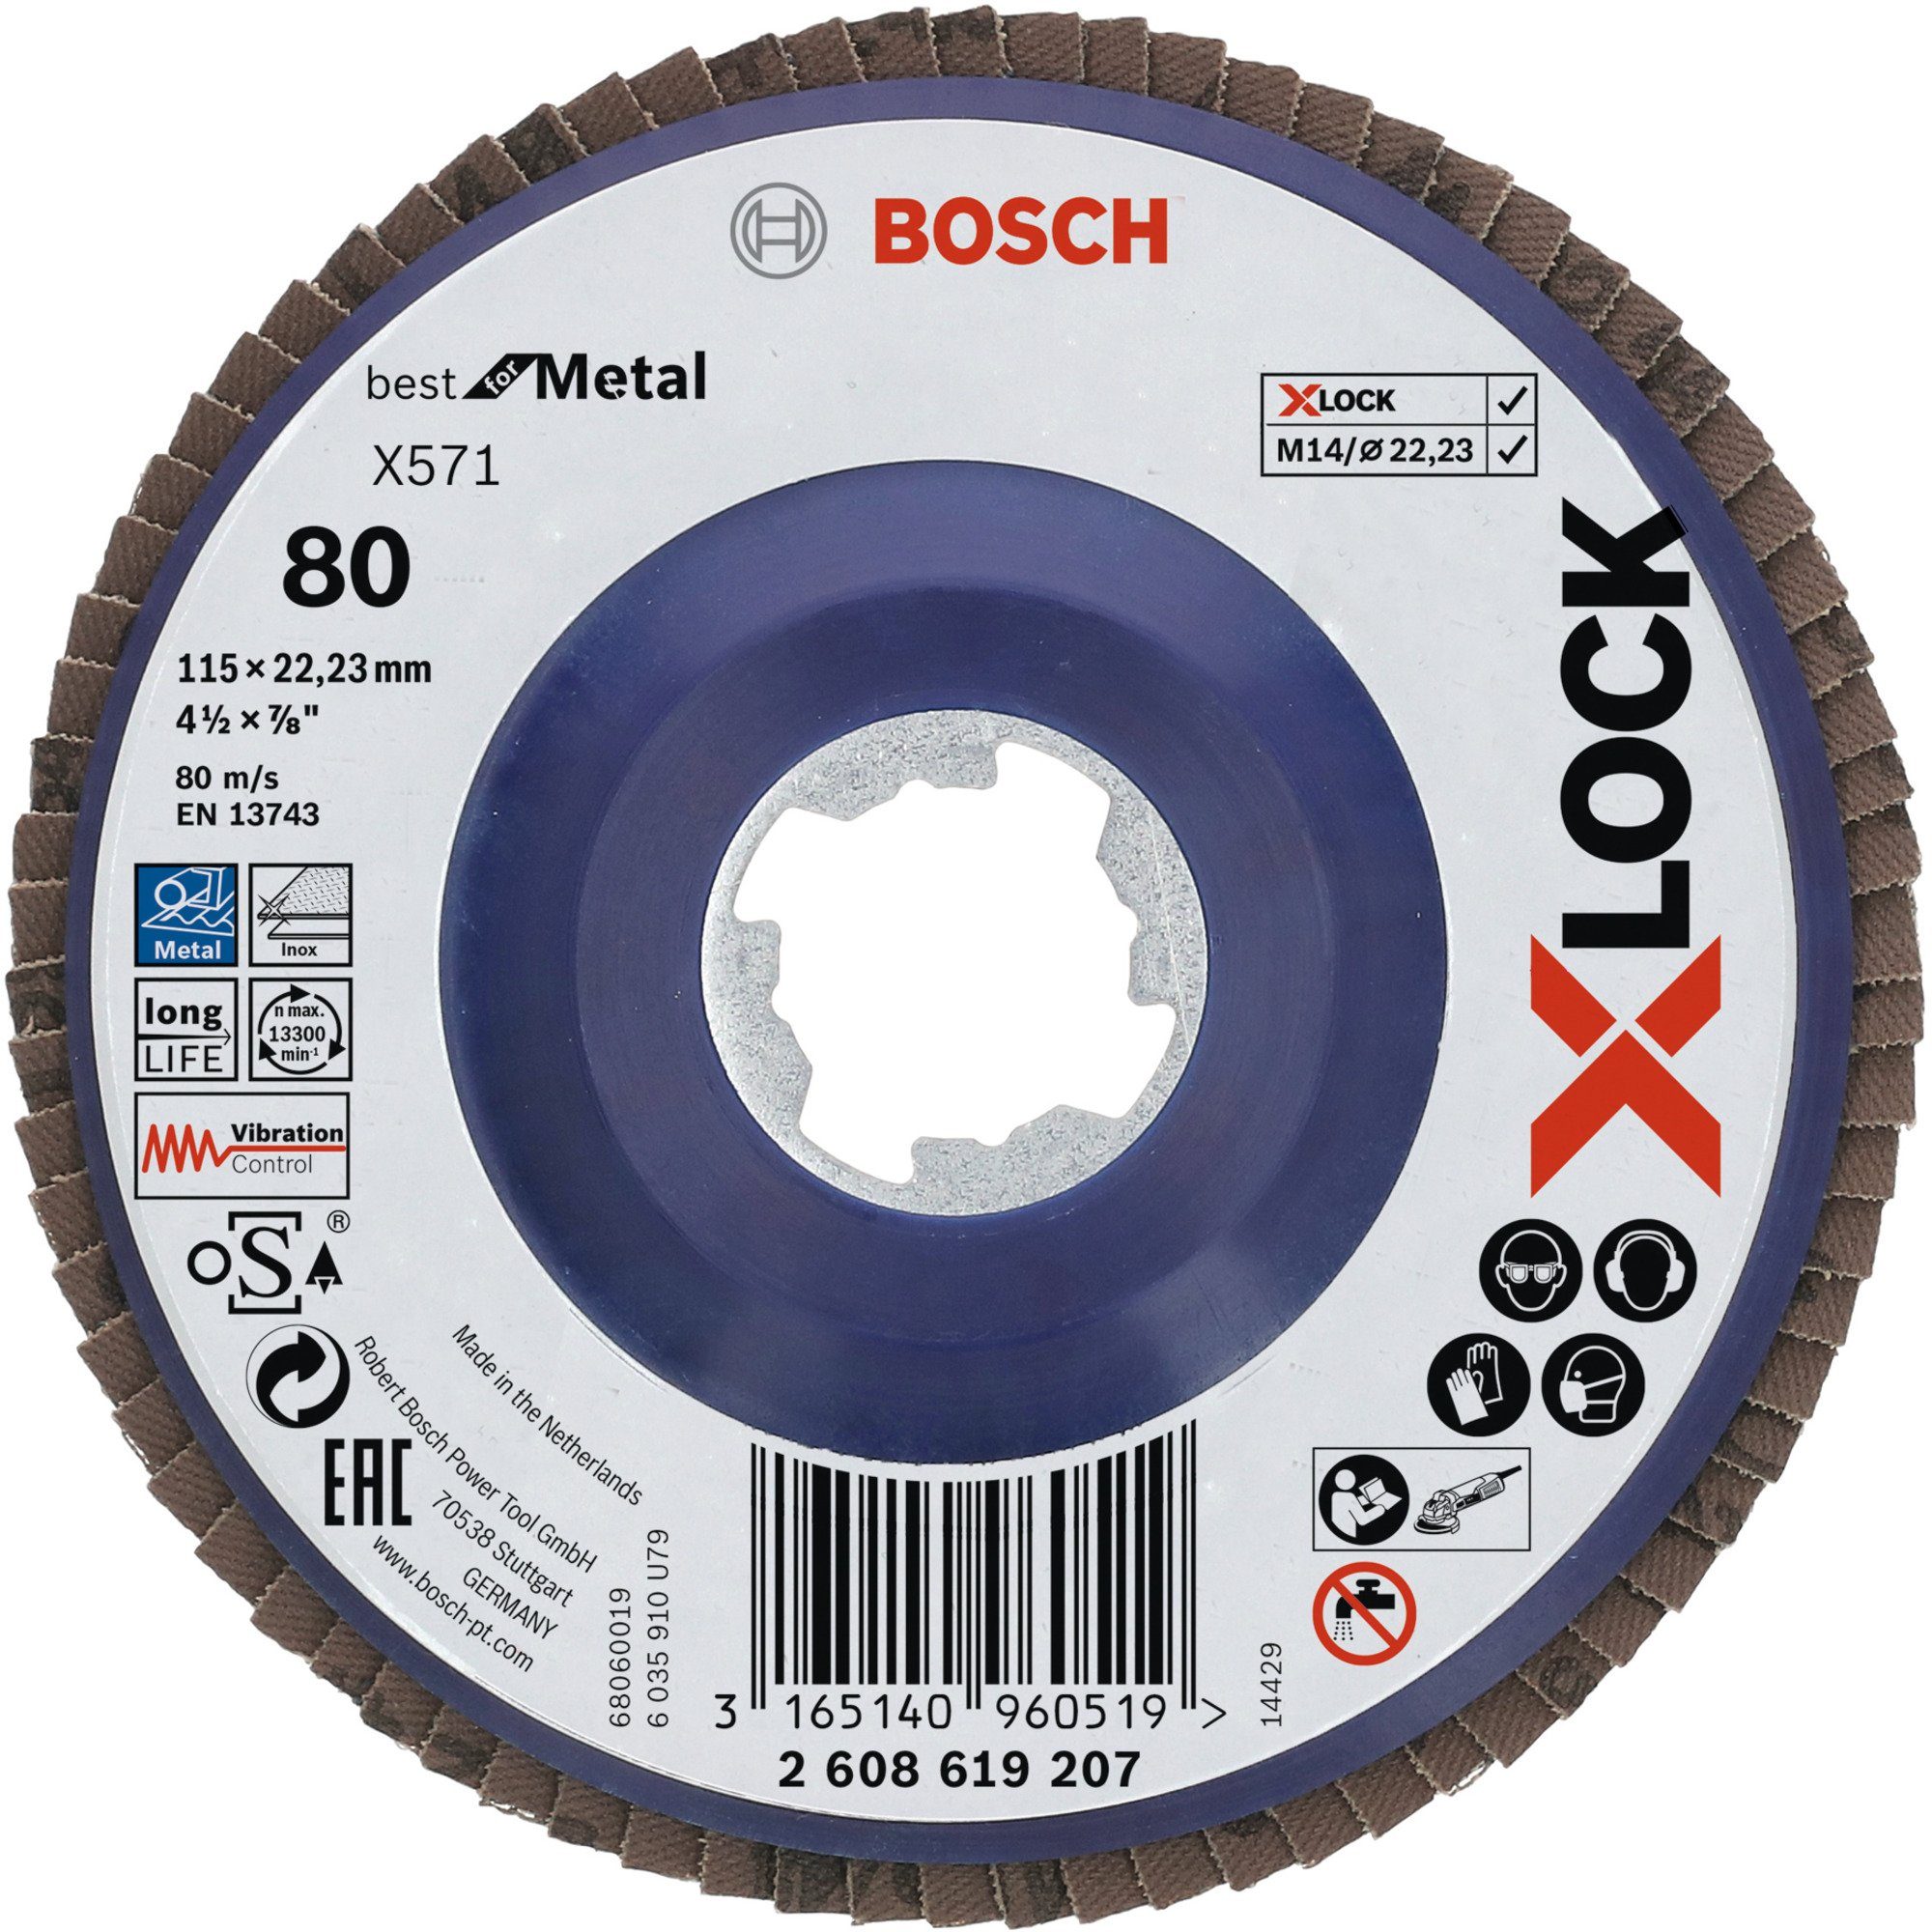 BOSCH Schleifscheibe Bosch Professional X-LOCK Fächerscheibe X571 Best